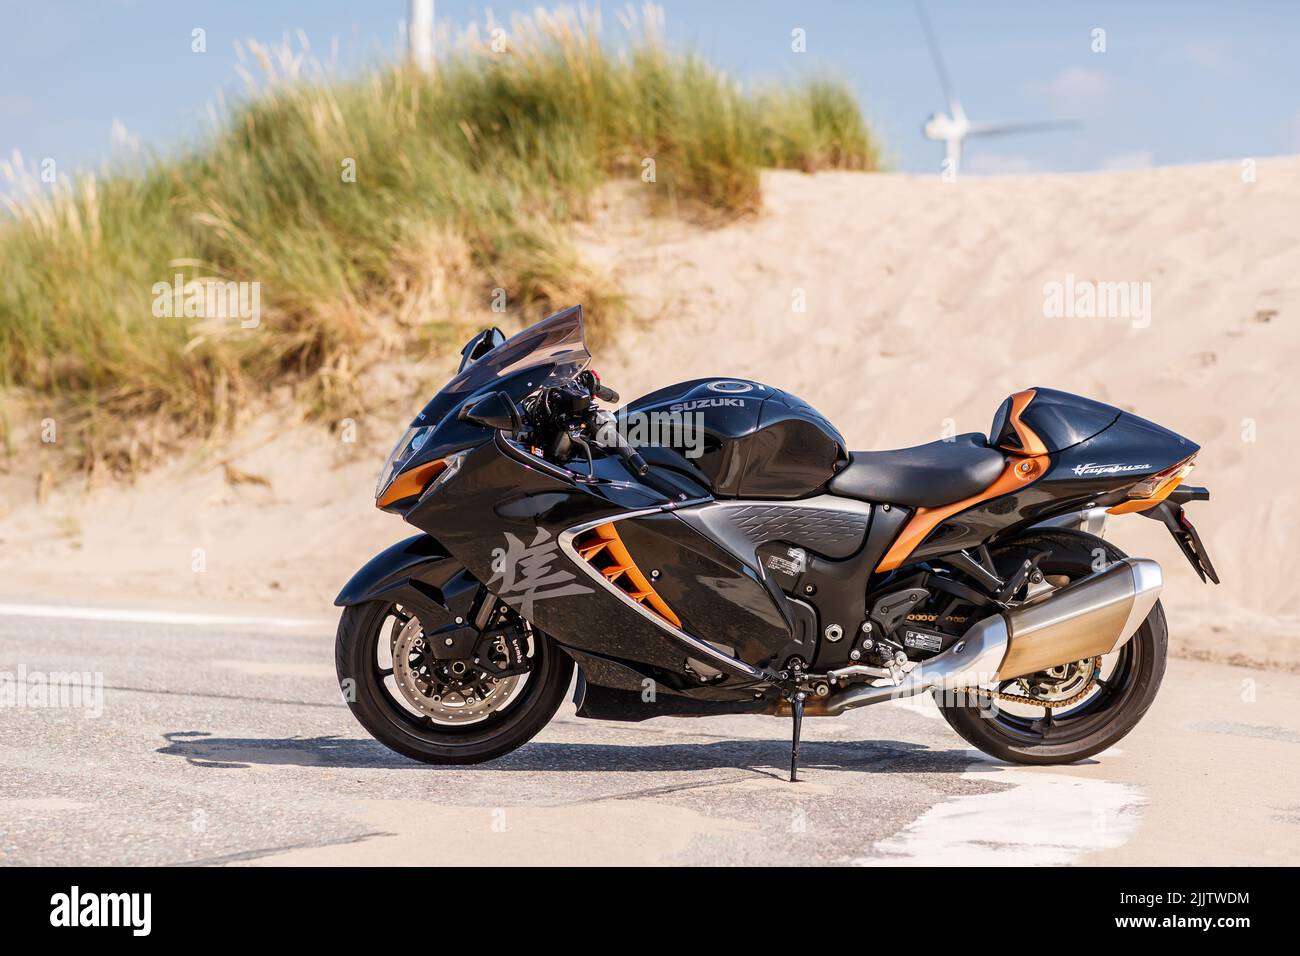 A Suzuki Hayabusa motorcycle parked in Maasvlaktestrand beach in the Netherlands Stock Photo